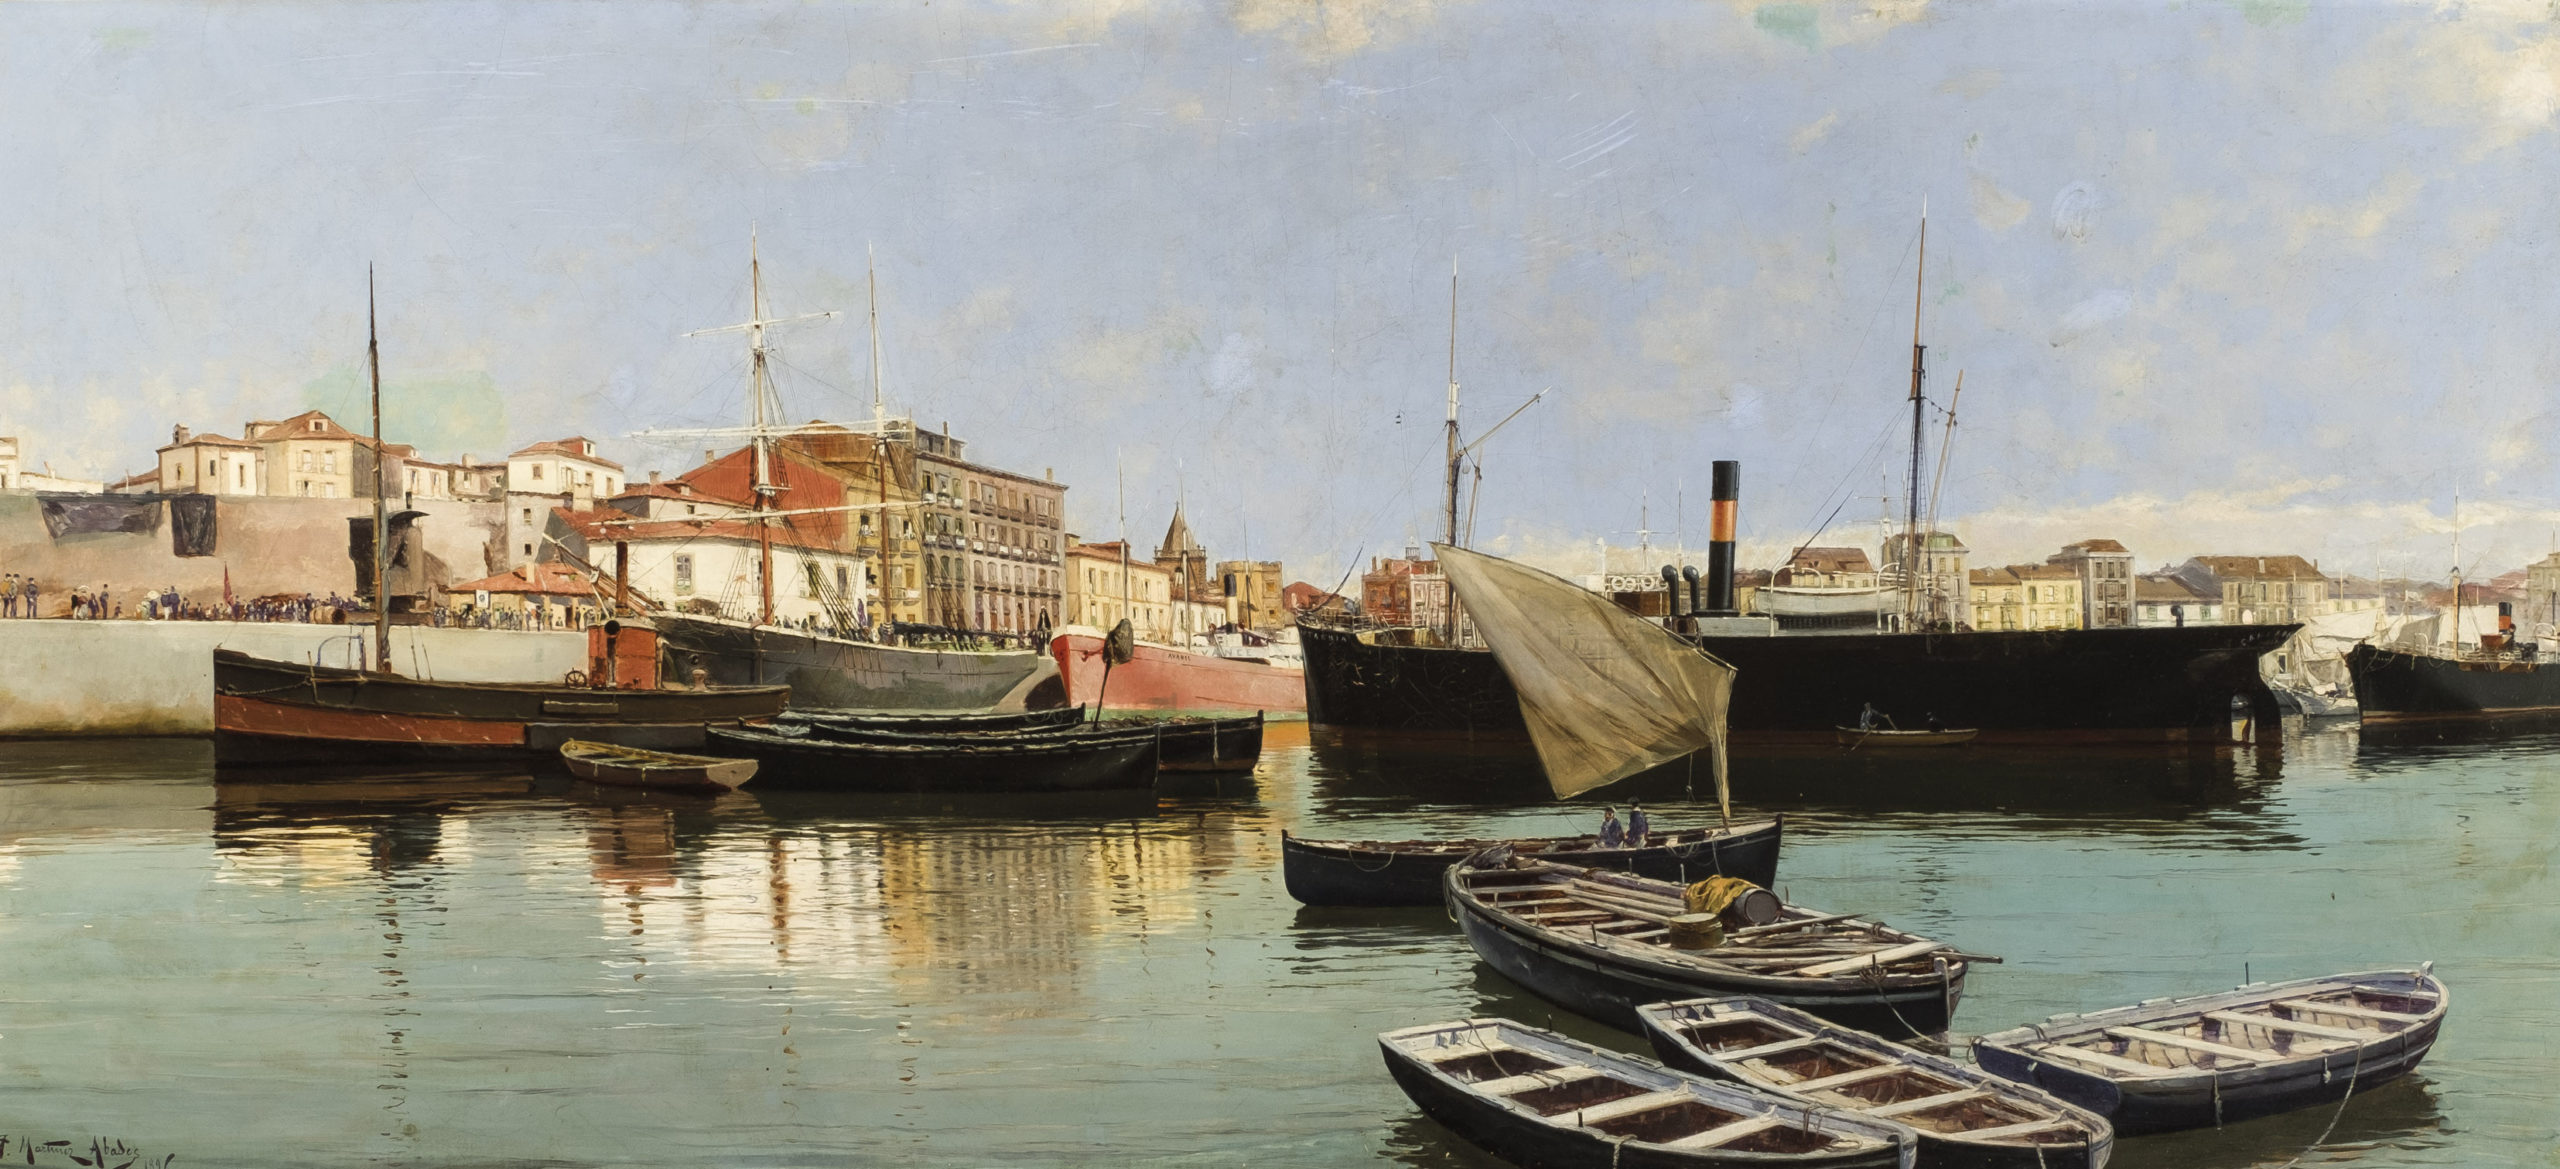 Juan Martínez Abades, Puerto de Gijón, 1896. Salida: 4.000 euros. Remate: 9.000 euros